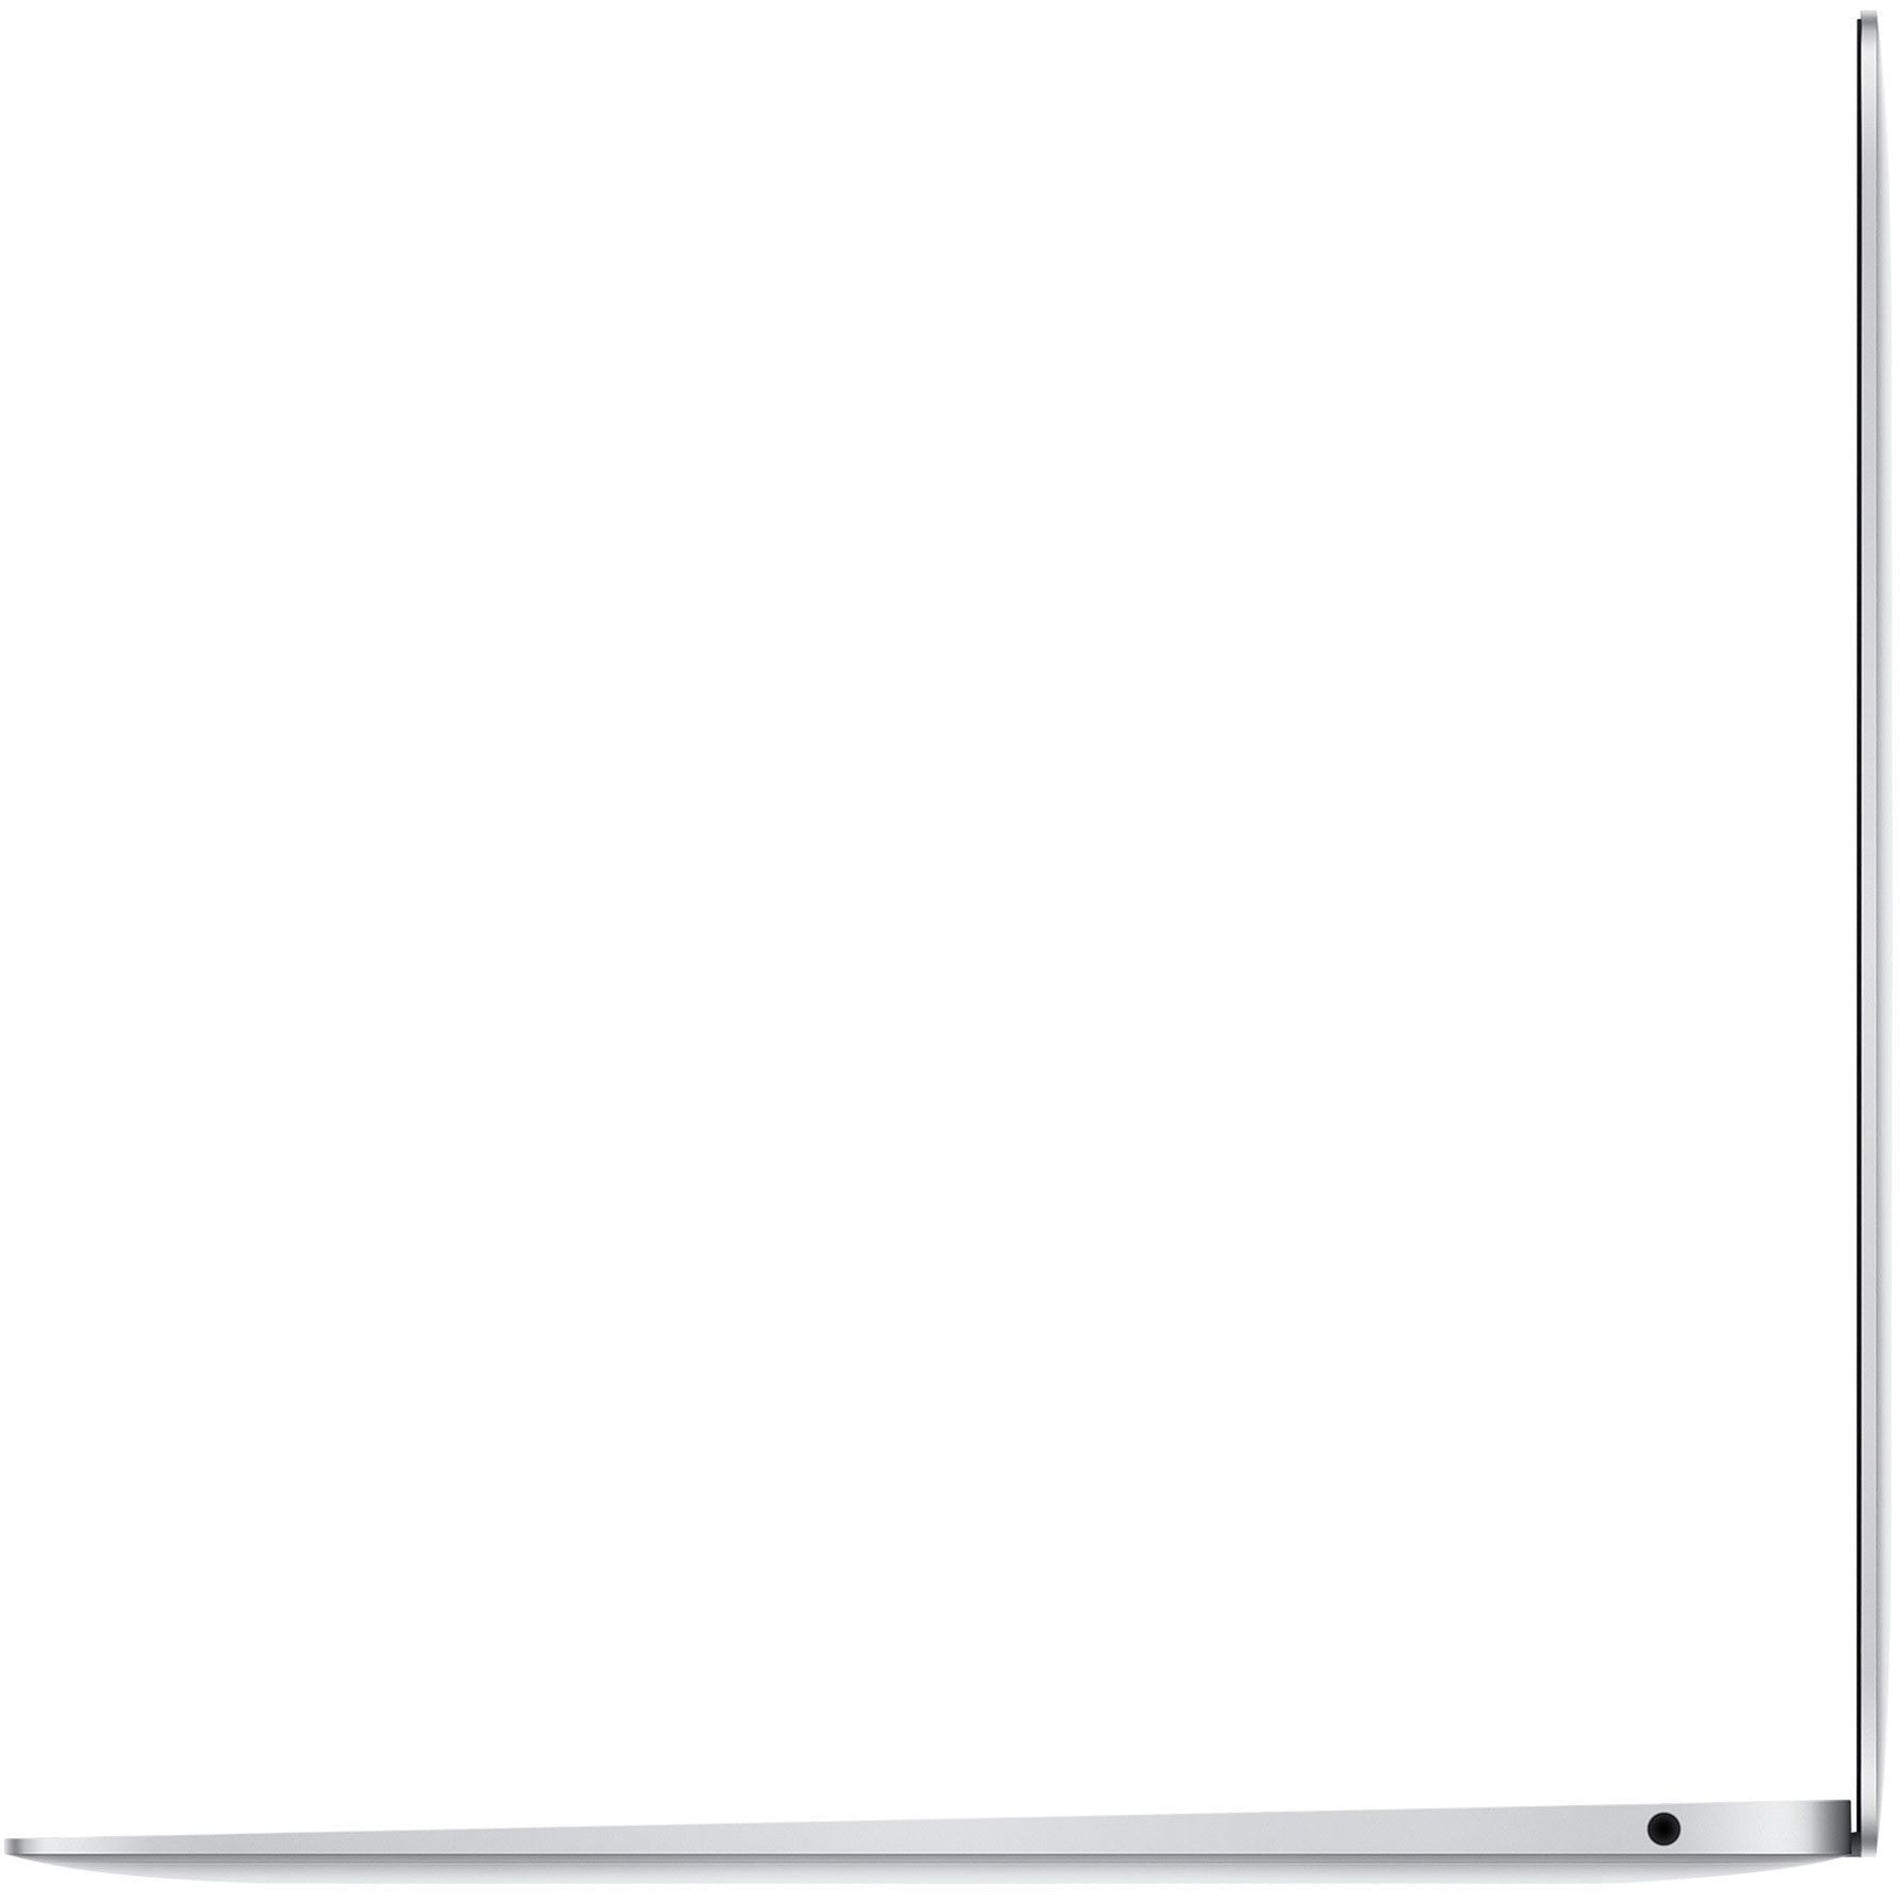 Apple MVH42LL/A MacBook Air 13-inch Silver, 10th Gen Intel Core i5, 8GB RAM, 512GB SSD